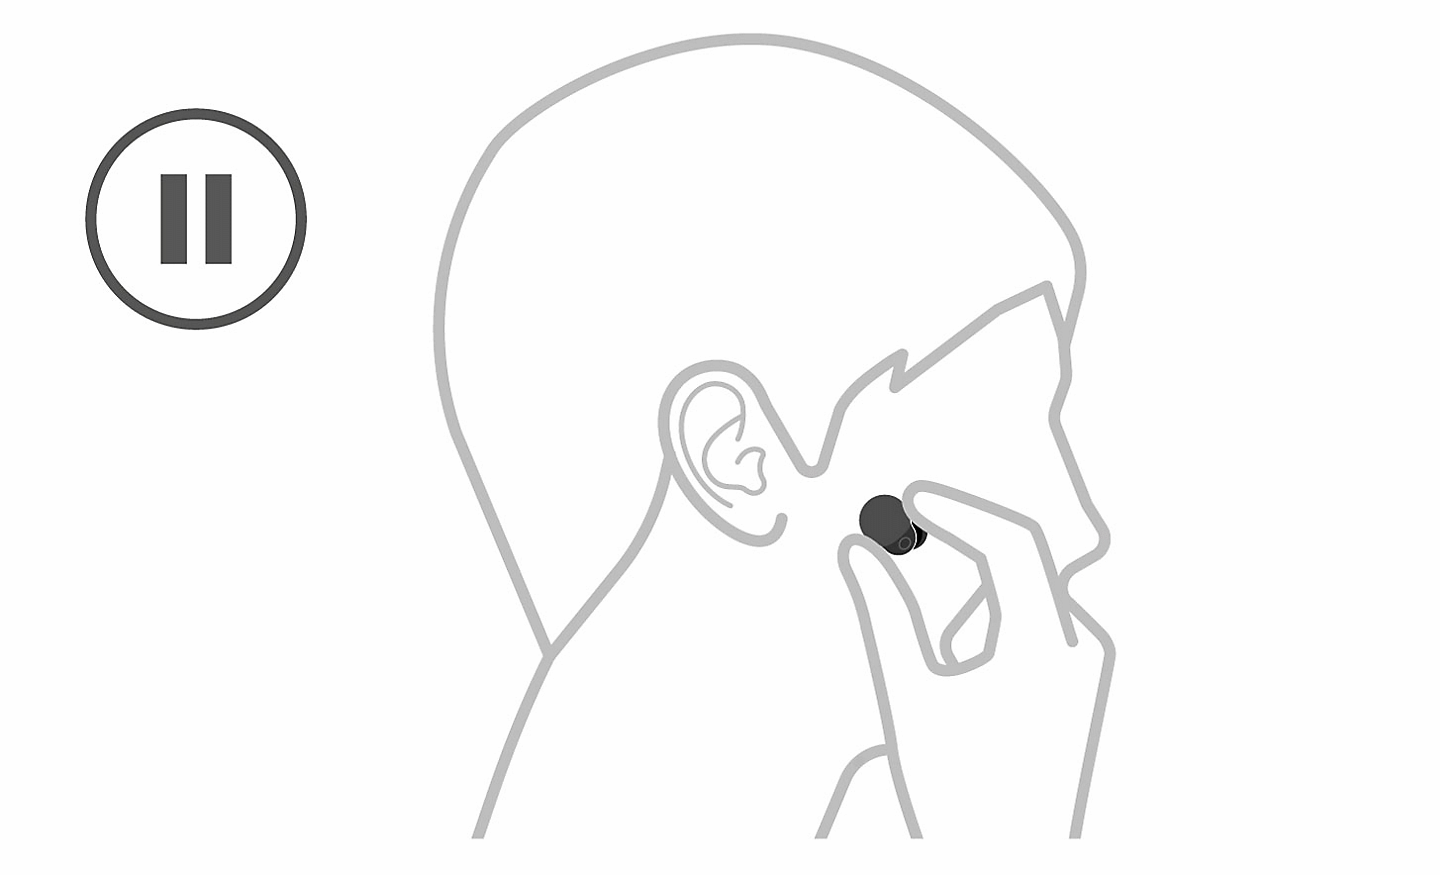 Slika glave, na levi strani je ikona za premor, roka pa daje odstranjuje slušalko iz ušesa